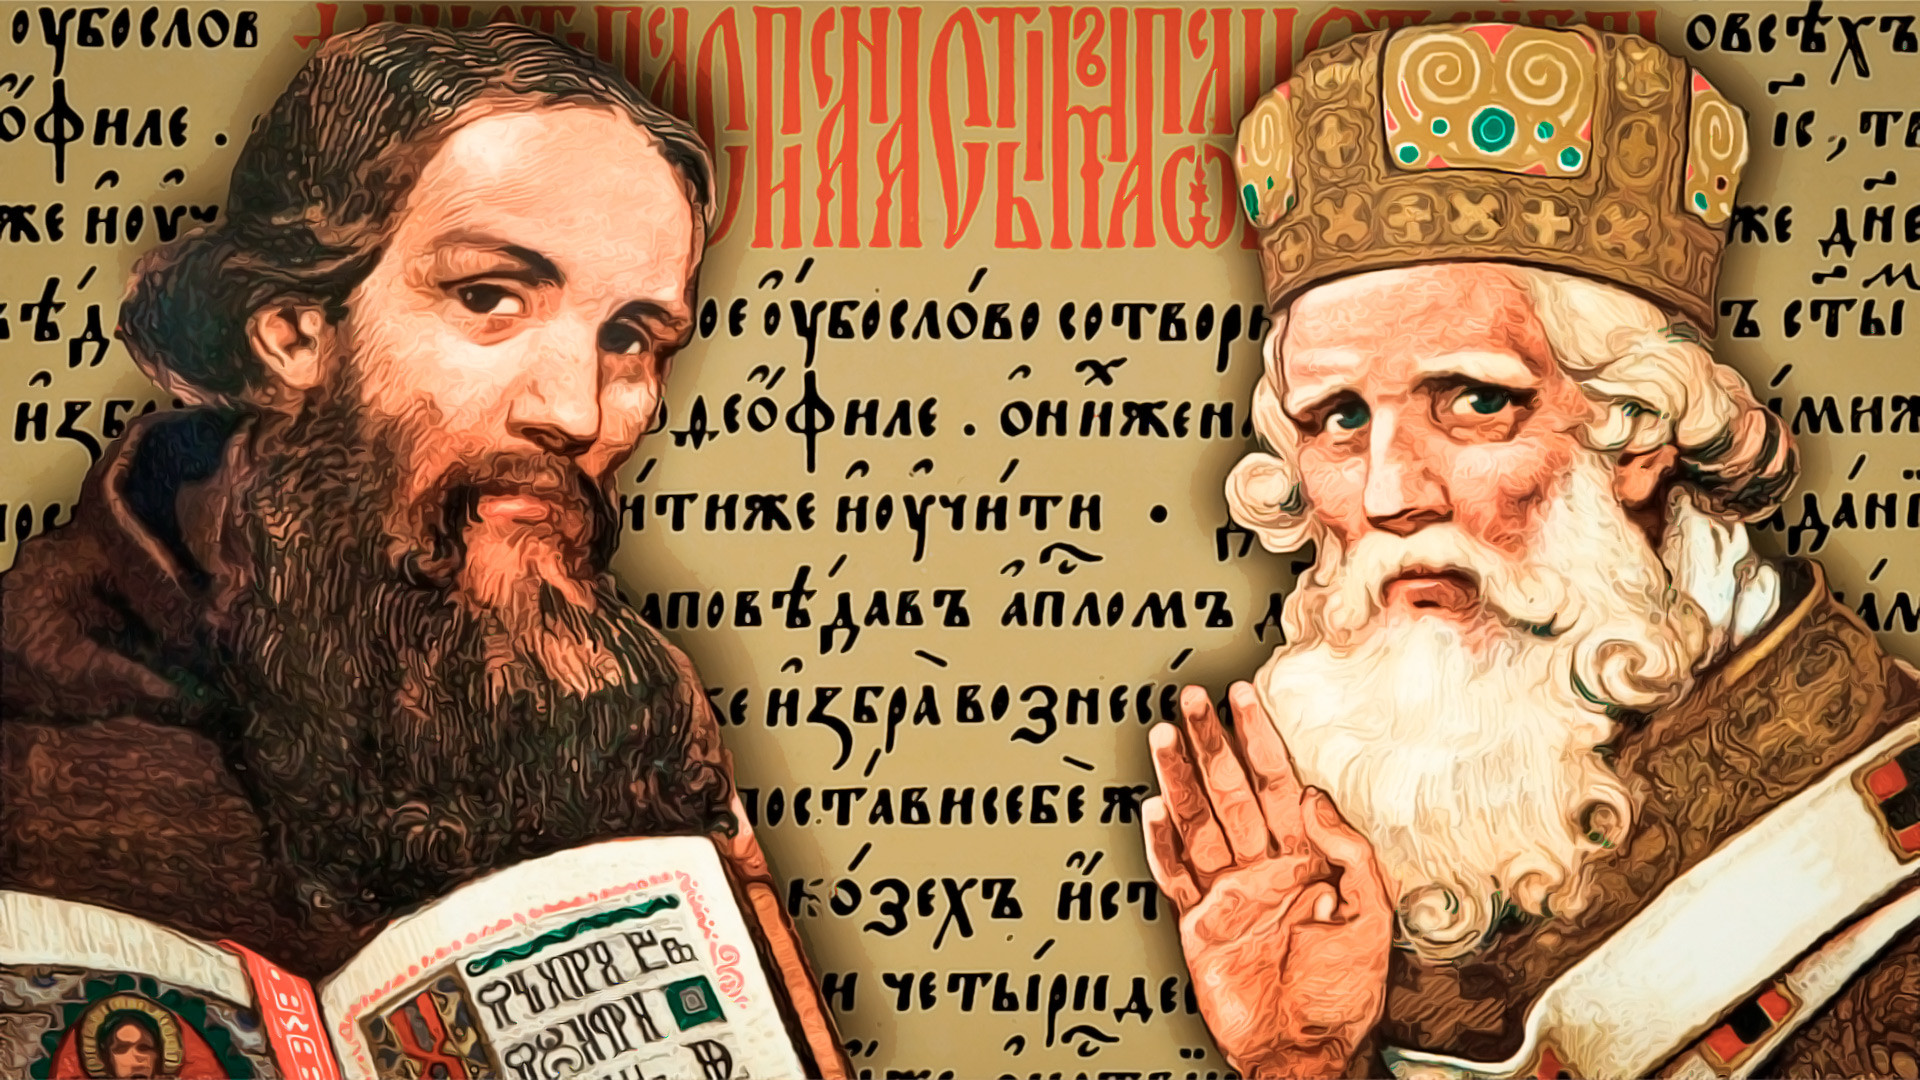 ロシア人がキリル文字を使う4つの理由 ロシア ビヨンド